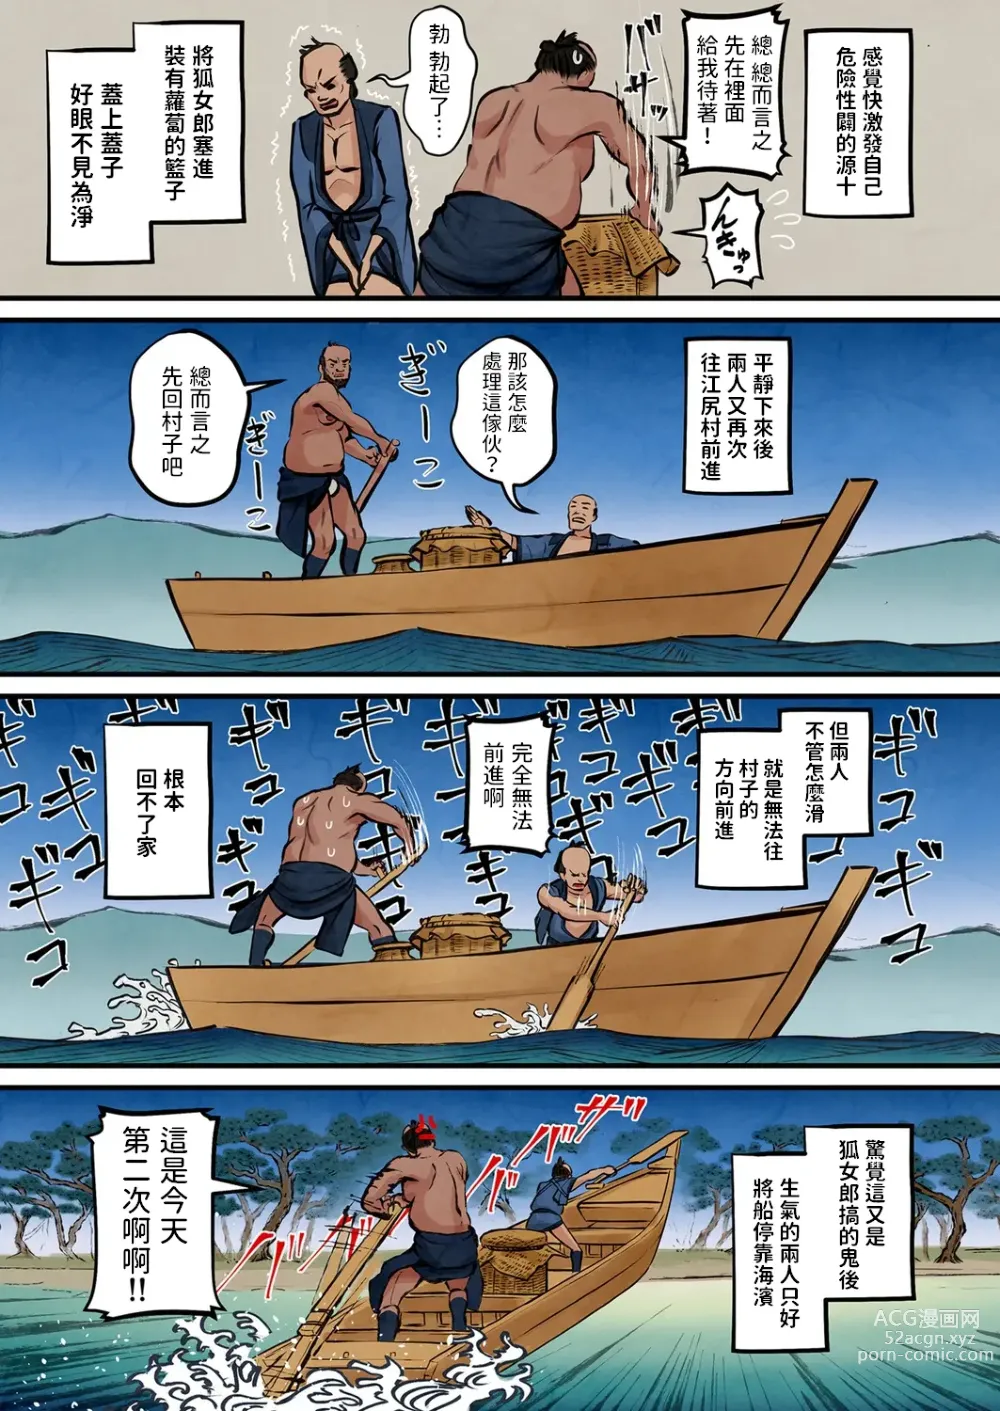 Page 8 of manga Nihon Mukashi Ero Banashi 3 “Hashidate Komerou”